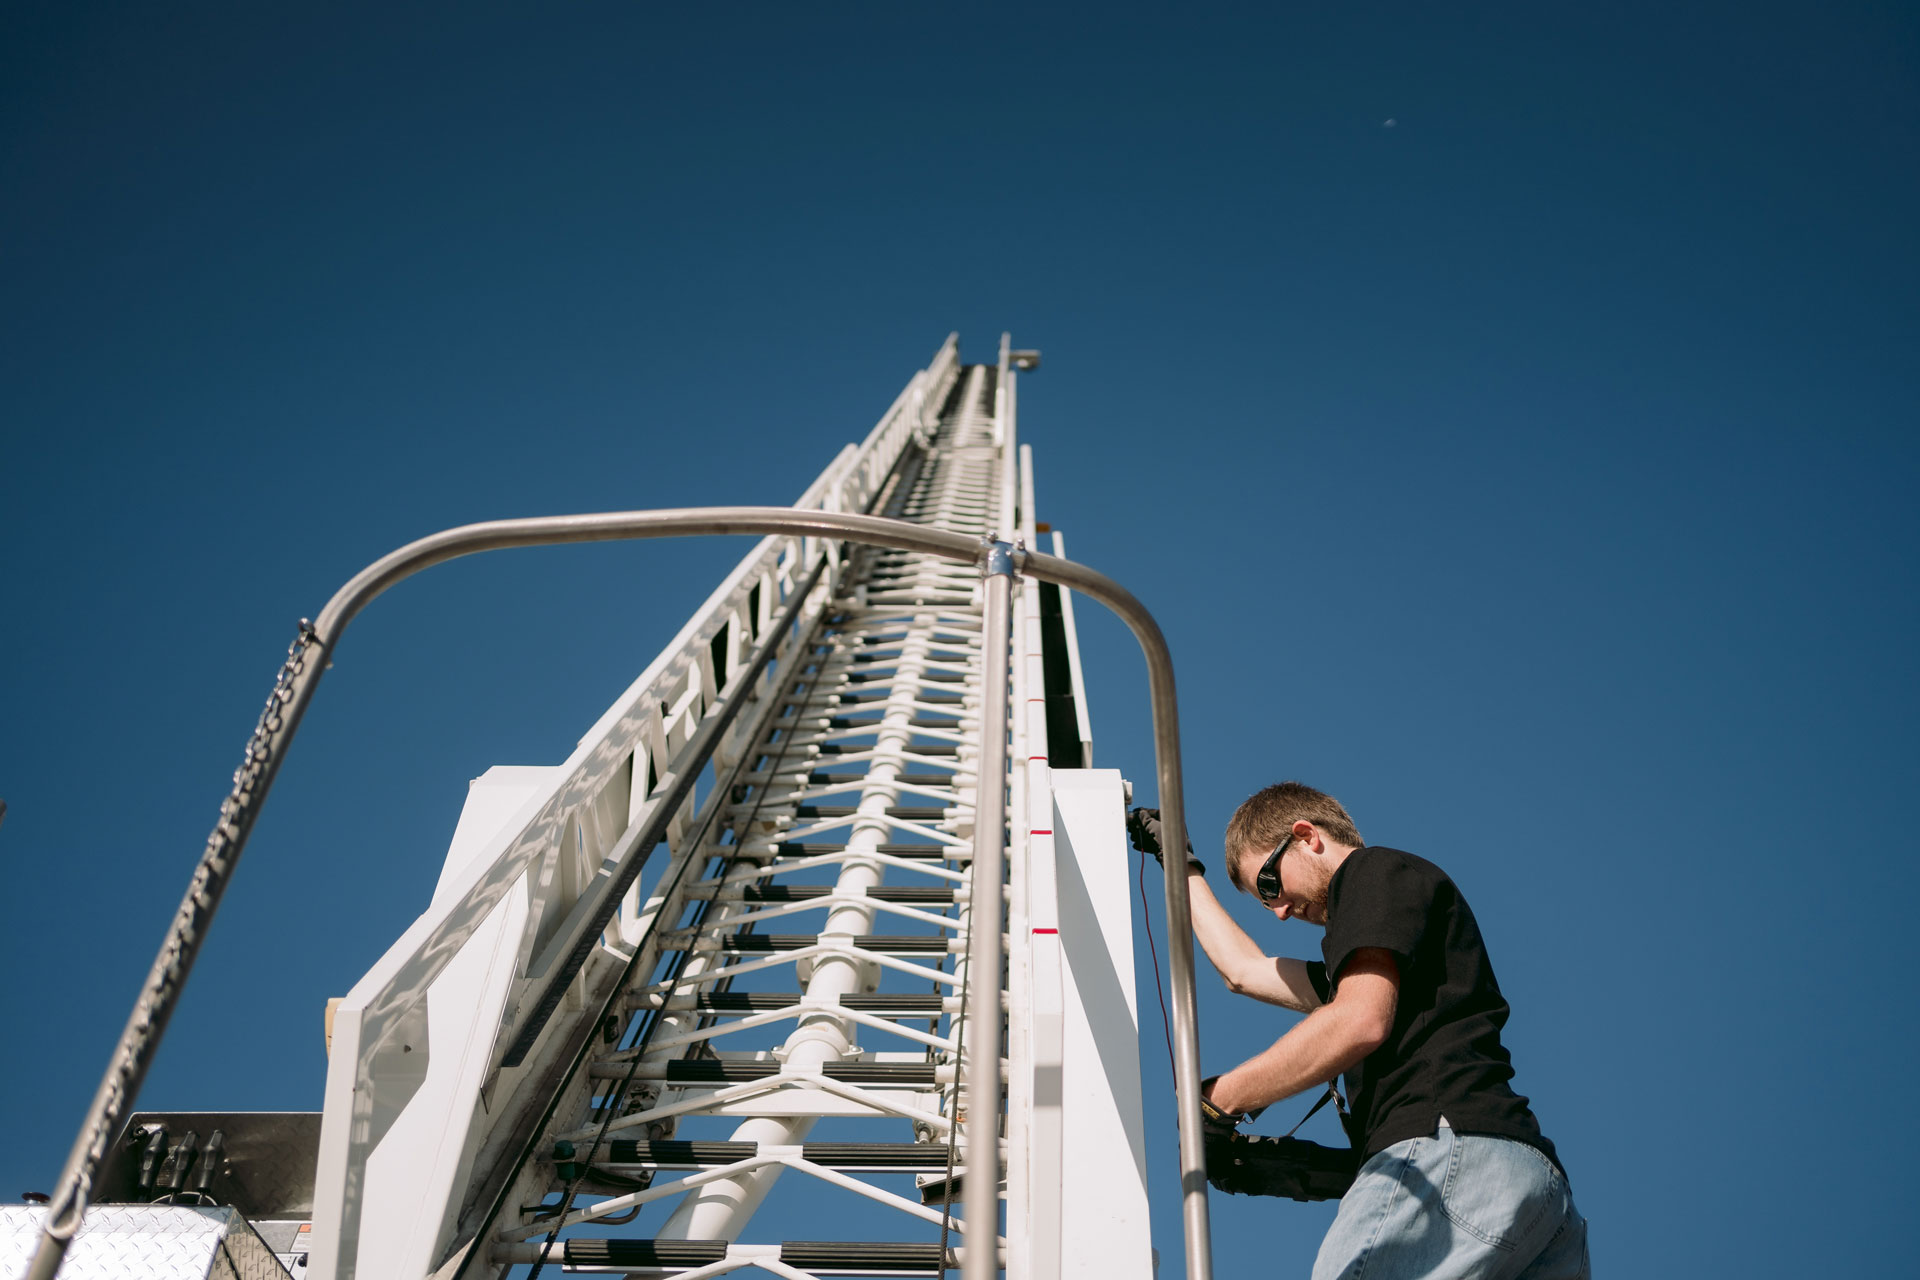 fire truck ladder inspection